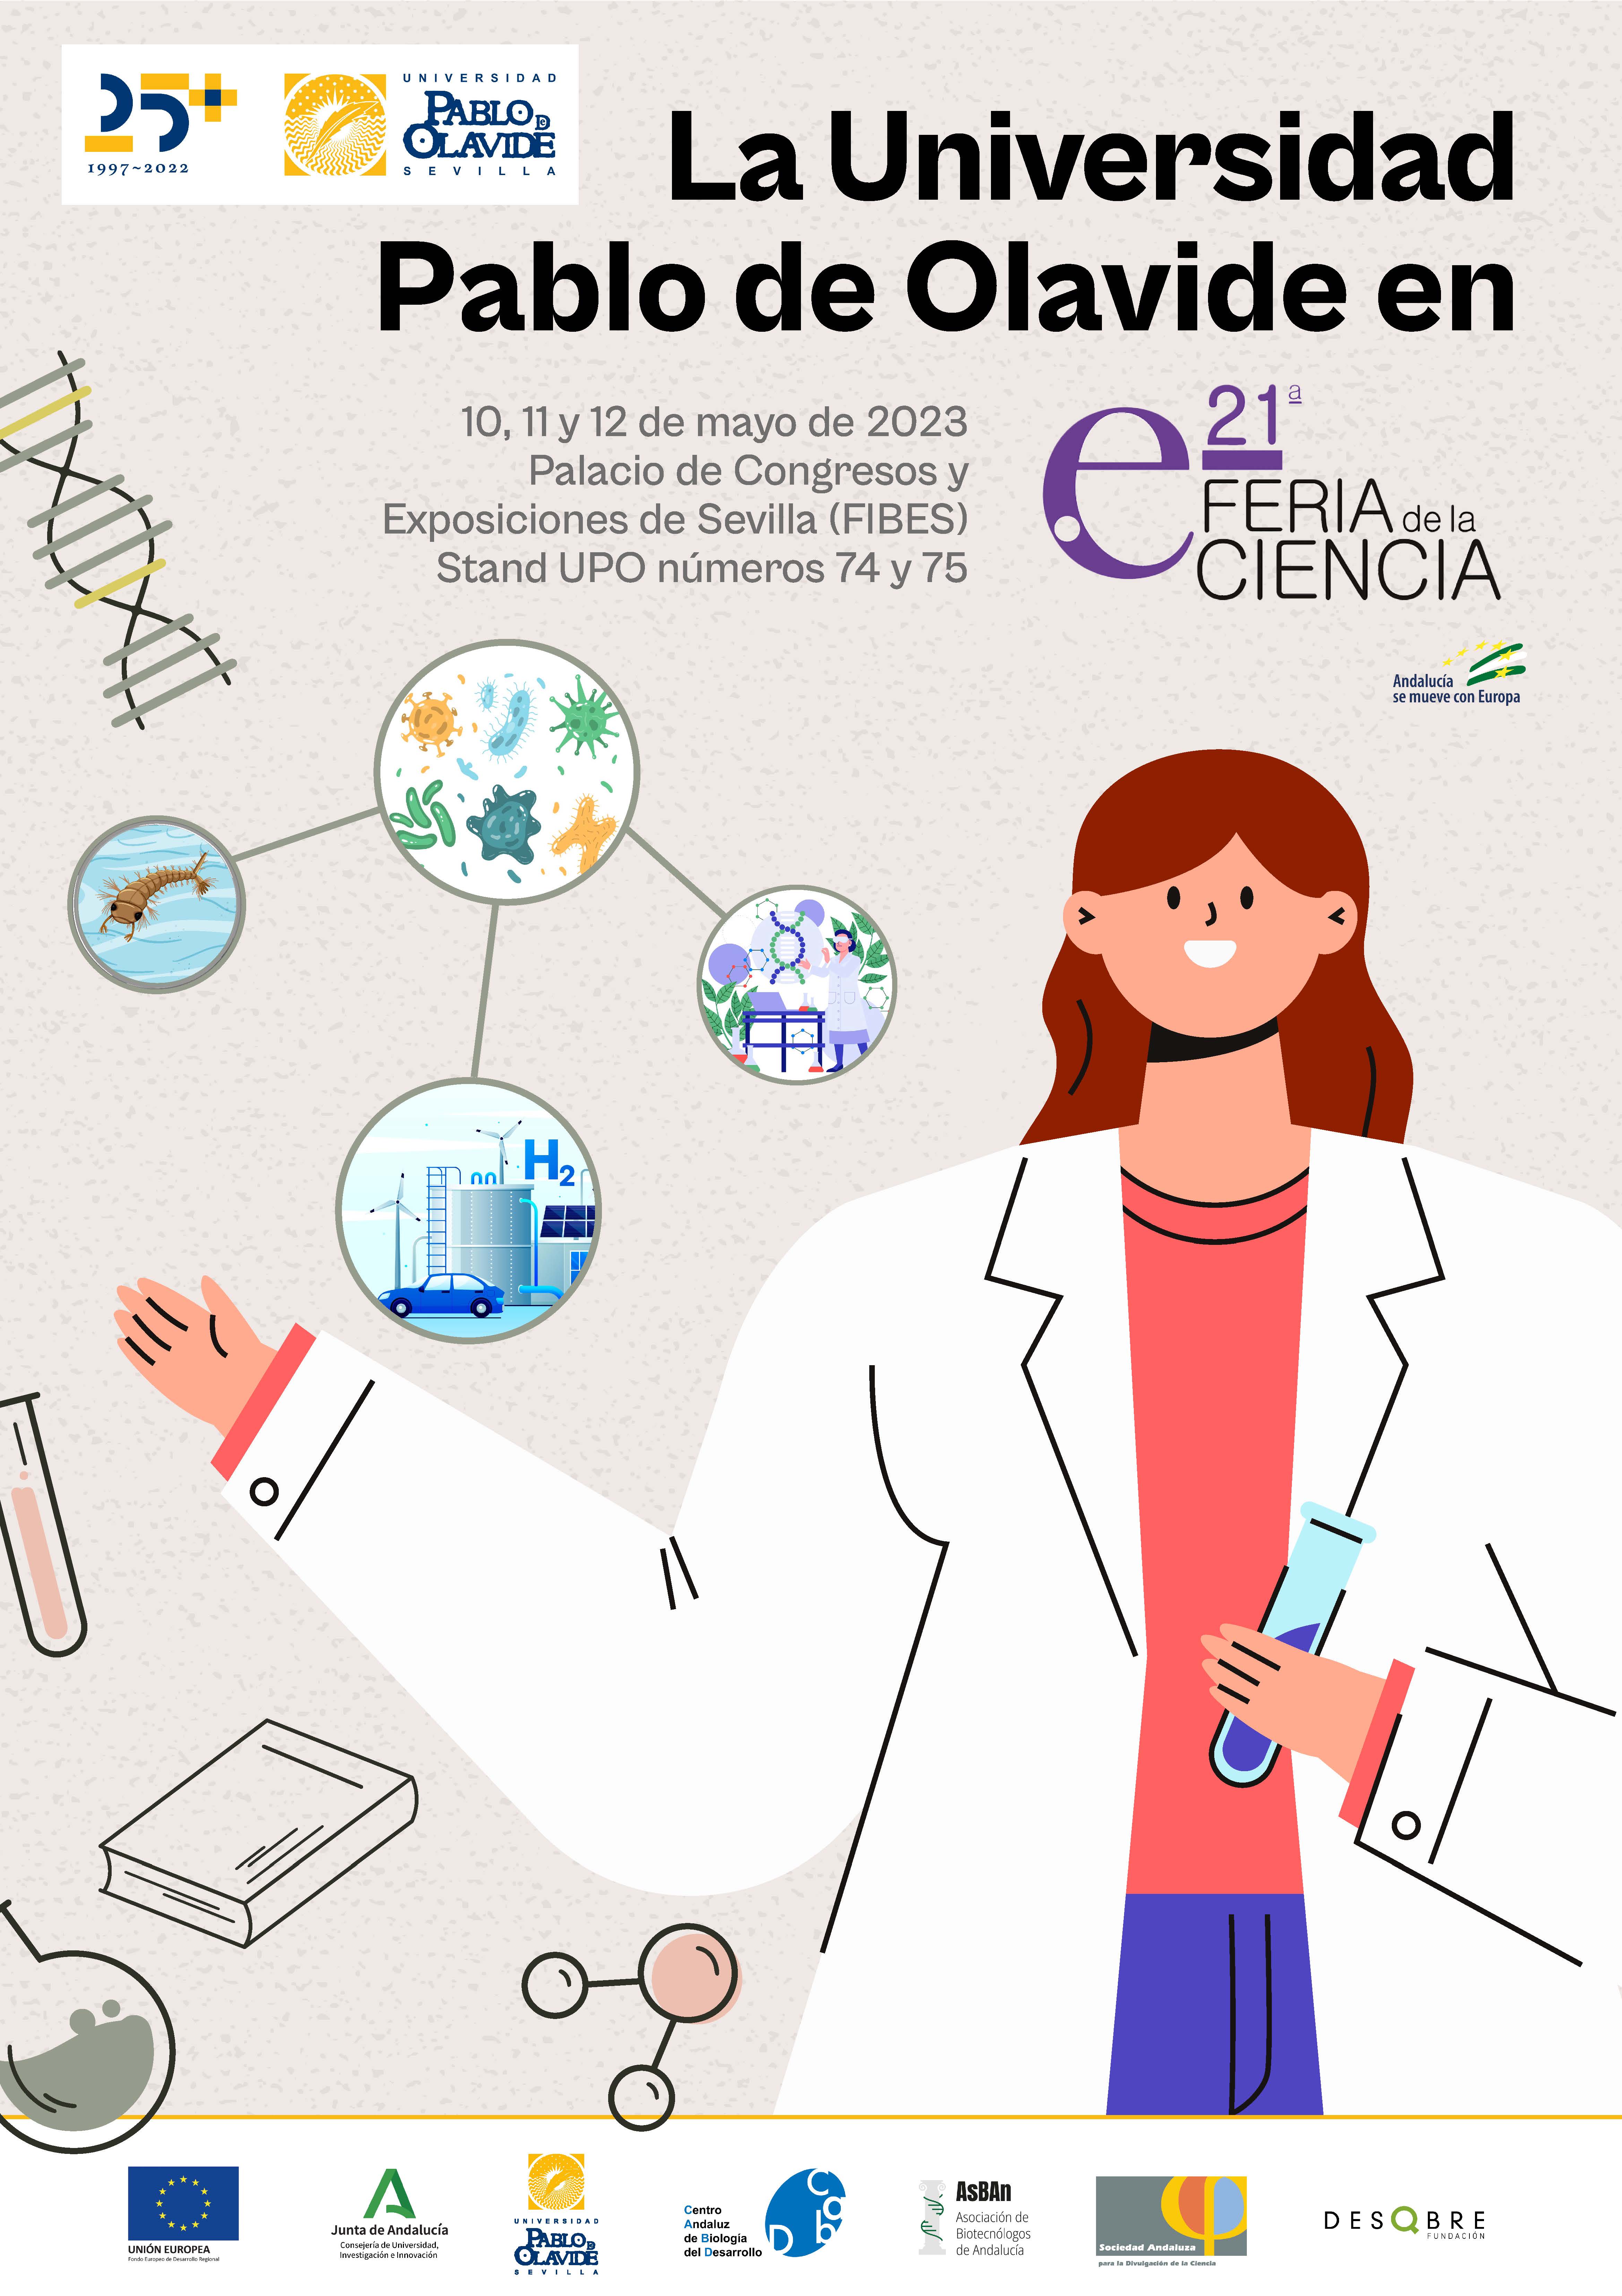 La Universidad Pablo de Olavide participa en la 21ª Feria de la Ciencia,  que se celebra en Sevilla los días 10, 11 y 12 de mayo